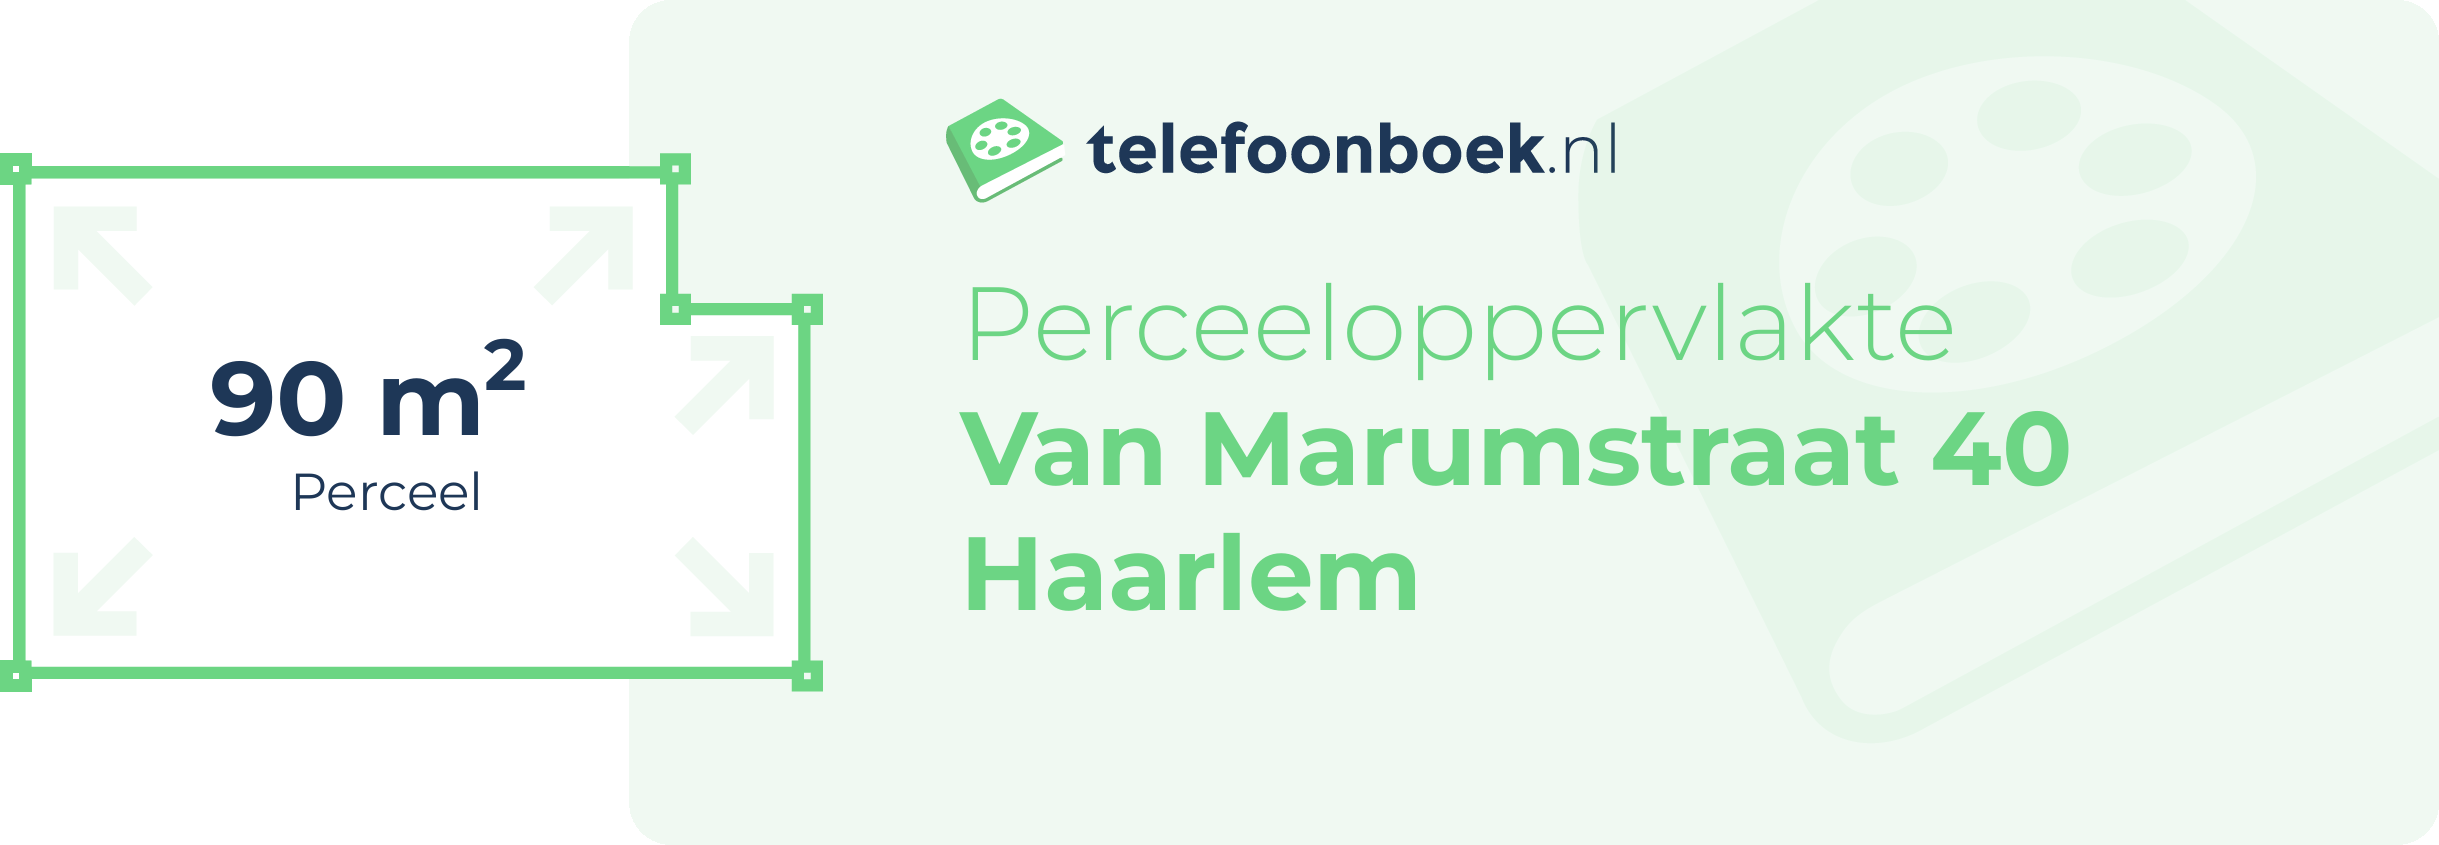 Perceeloppervlakte Van Marumstraat 40 Haarlem